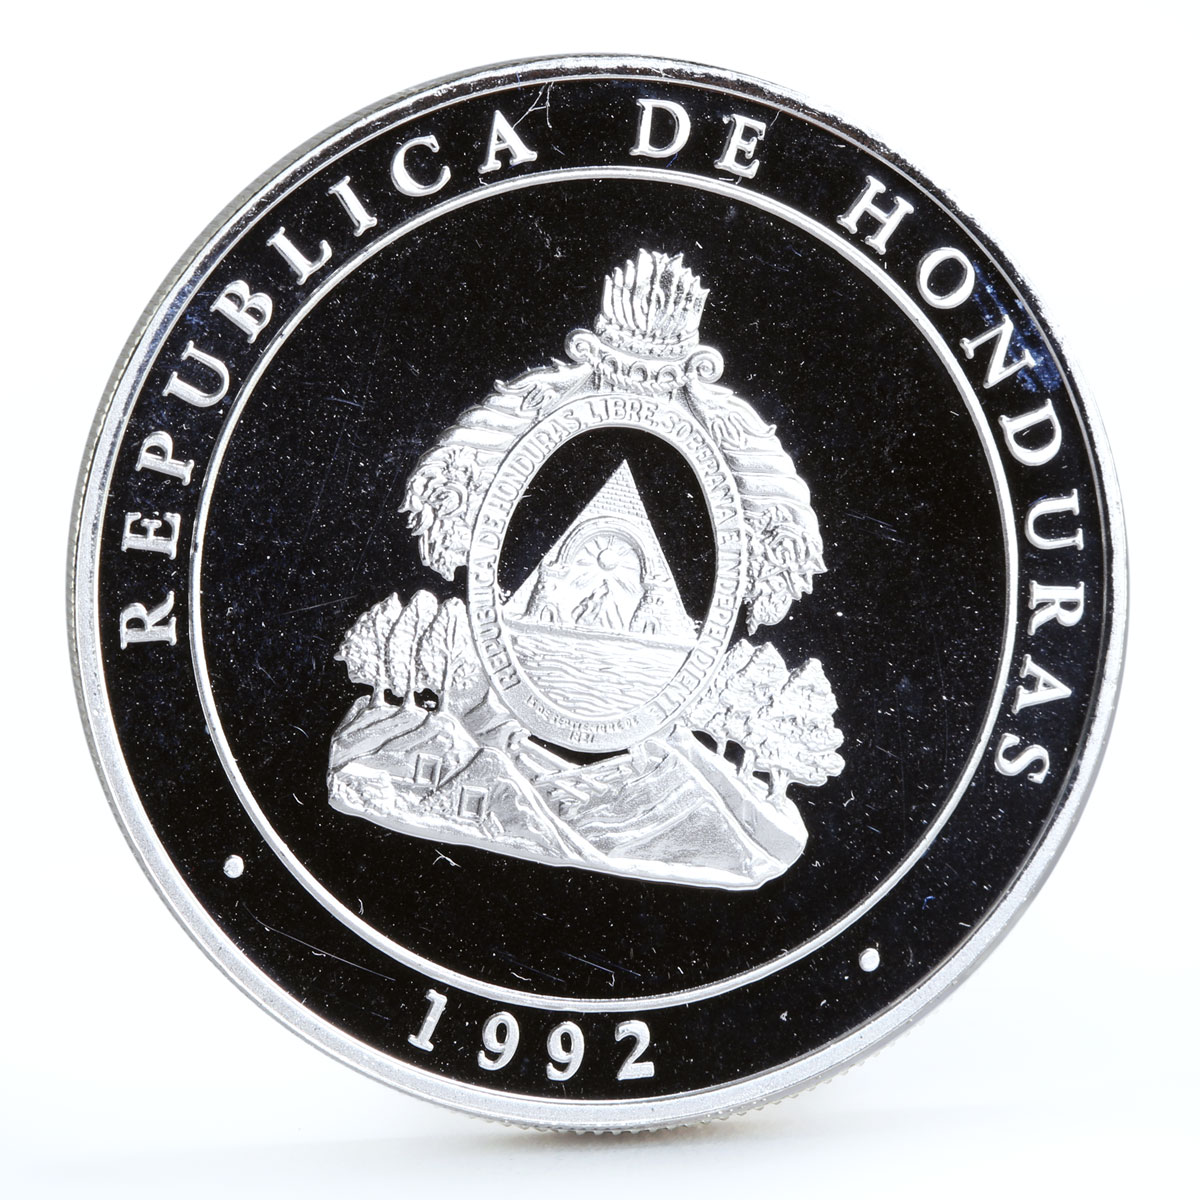 Honduras 100 lempiras Discovery of America Ship Stone Monument silver coin 1992